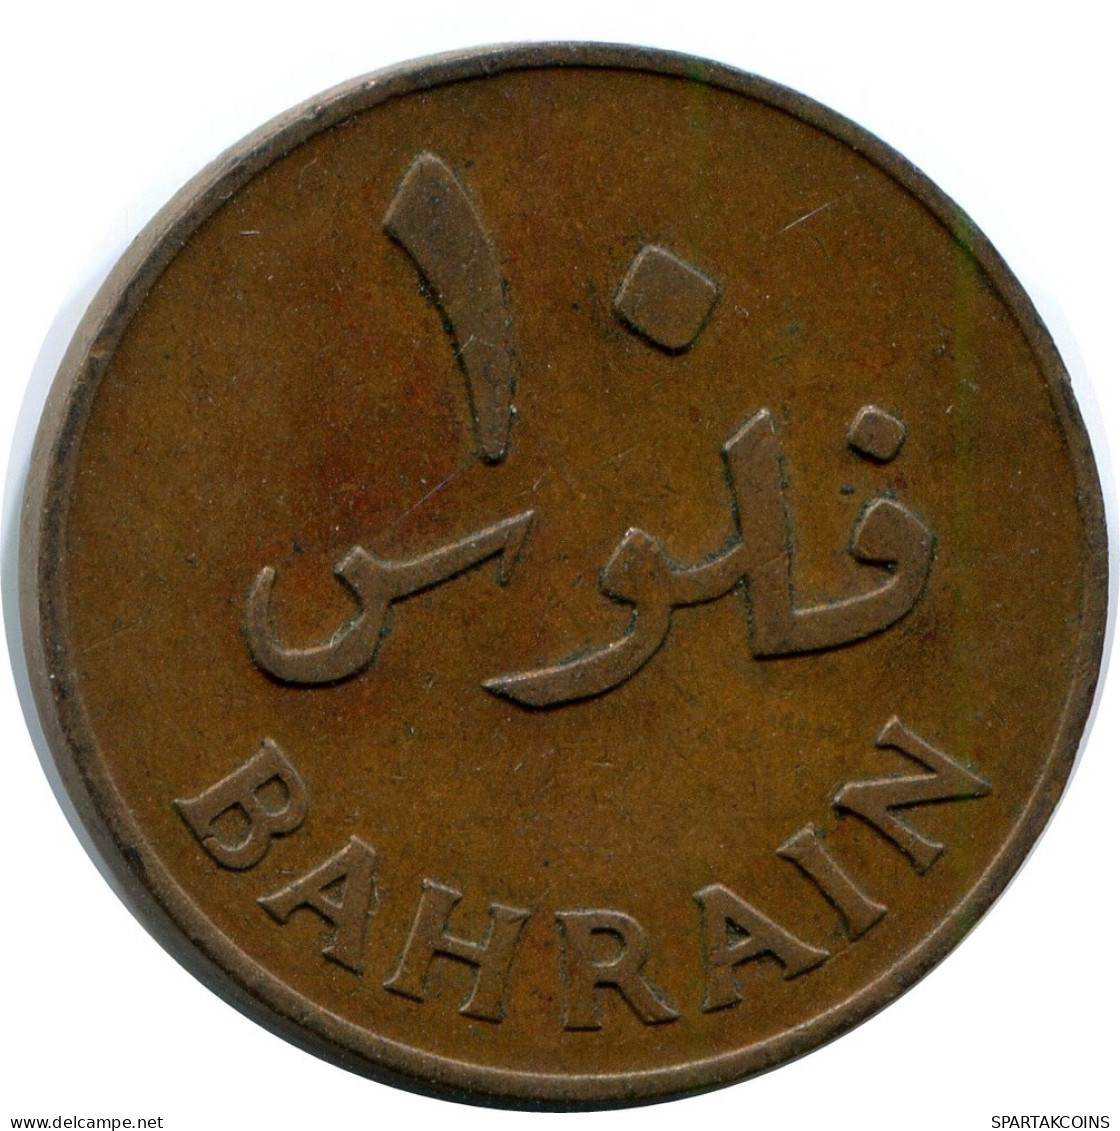 10 FILS 1970 BAHRAIN Coin #AP976.U.A - Bahreïn